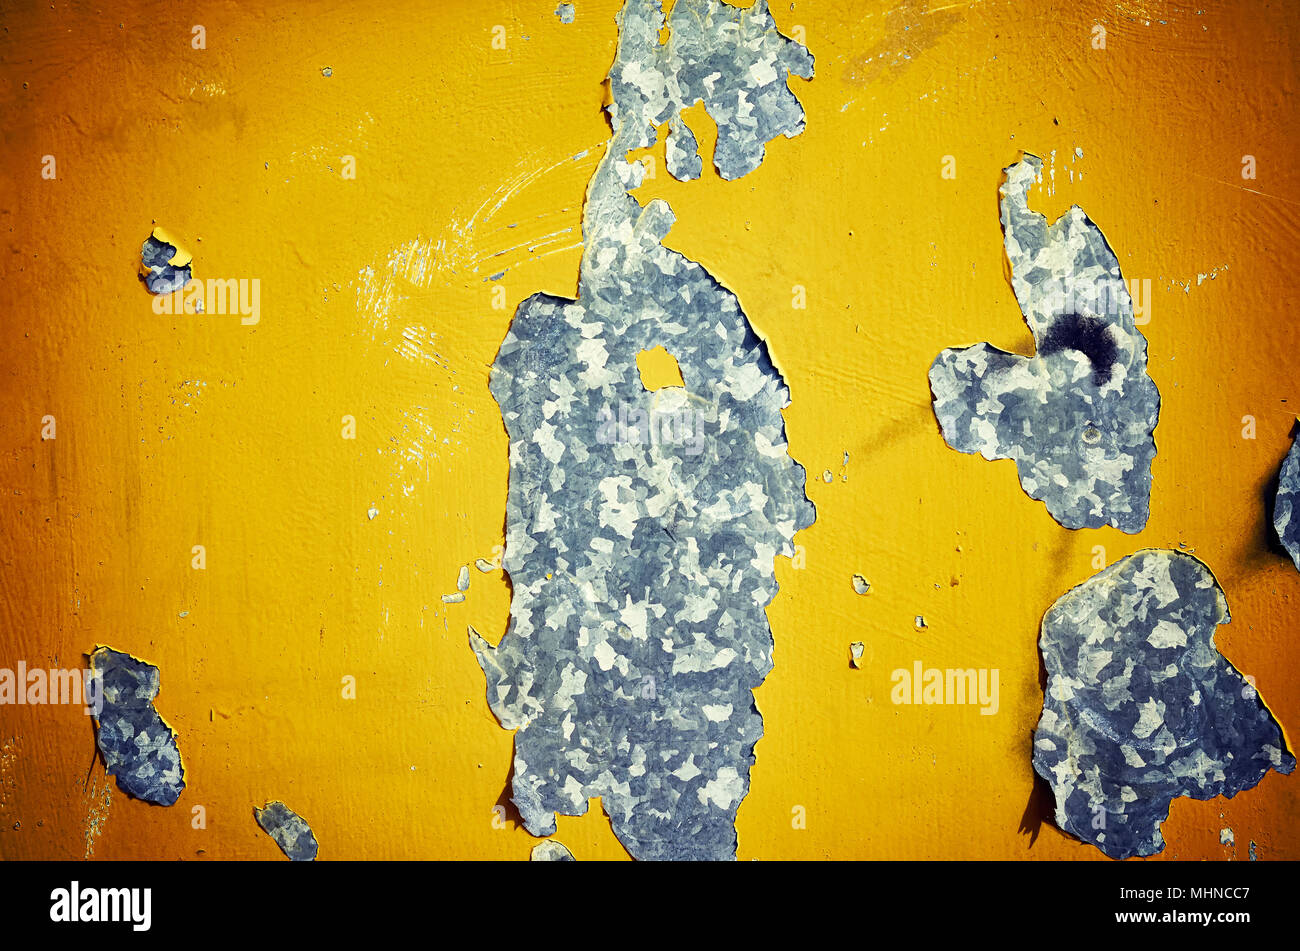 Mur de métal patiné avec de la peinture jaune de déroulage, abstract background. Banque D'Images